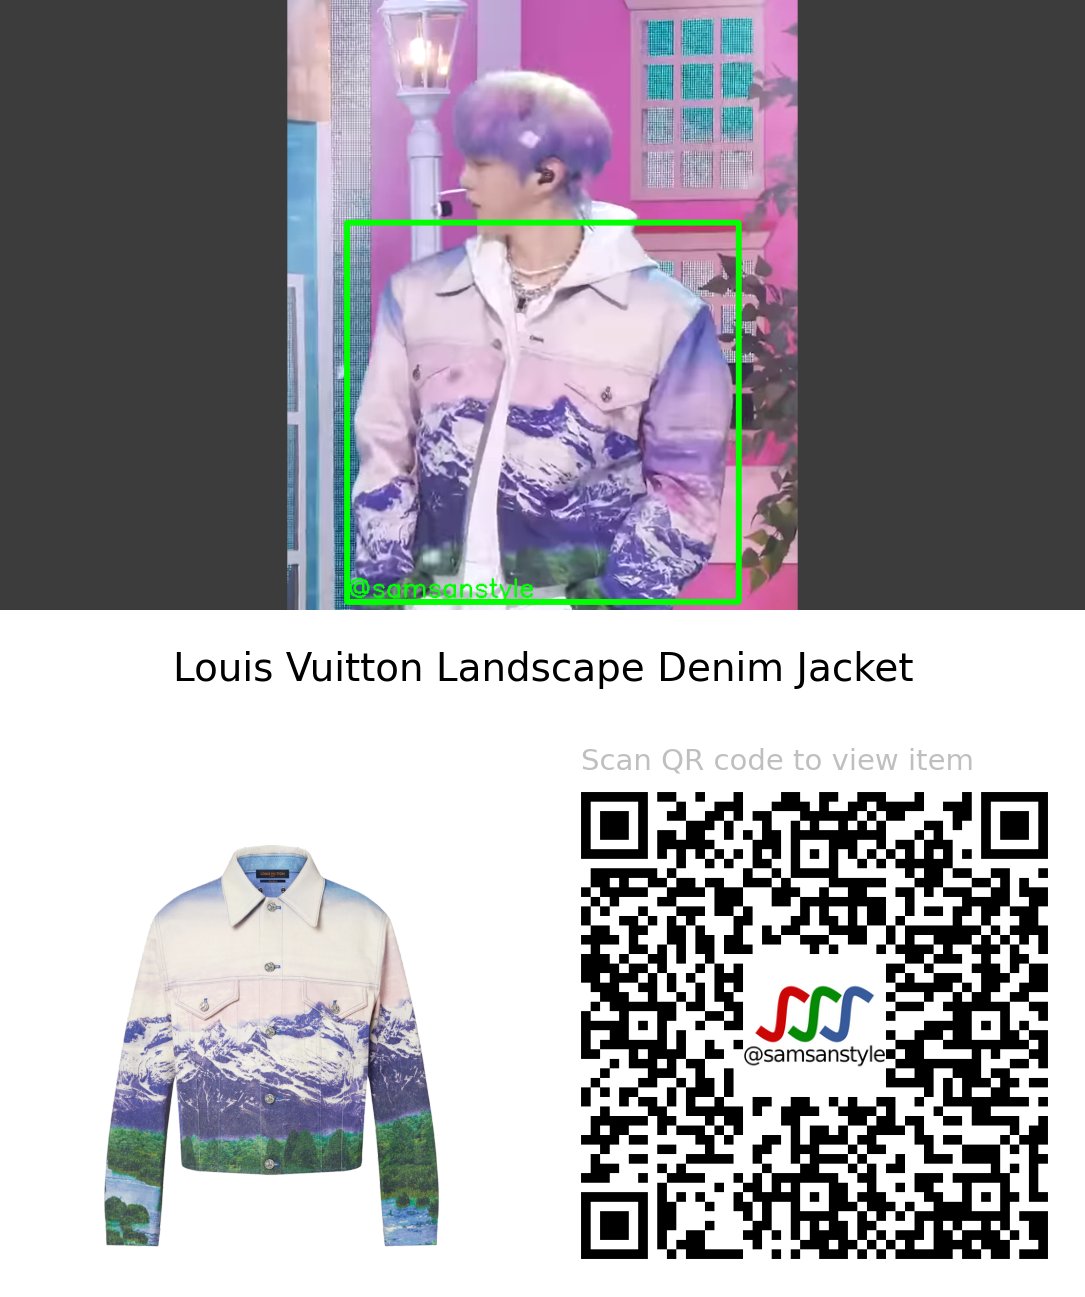 Louis Vuitton Landscape Denim Jacket